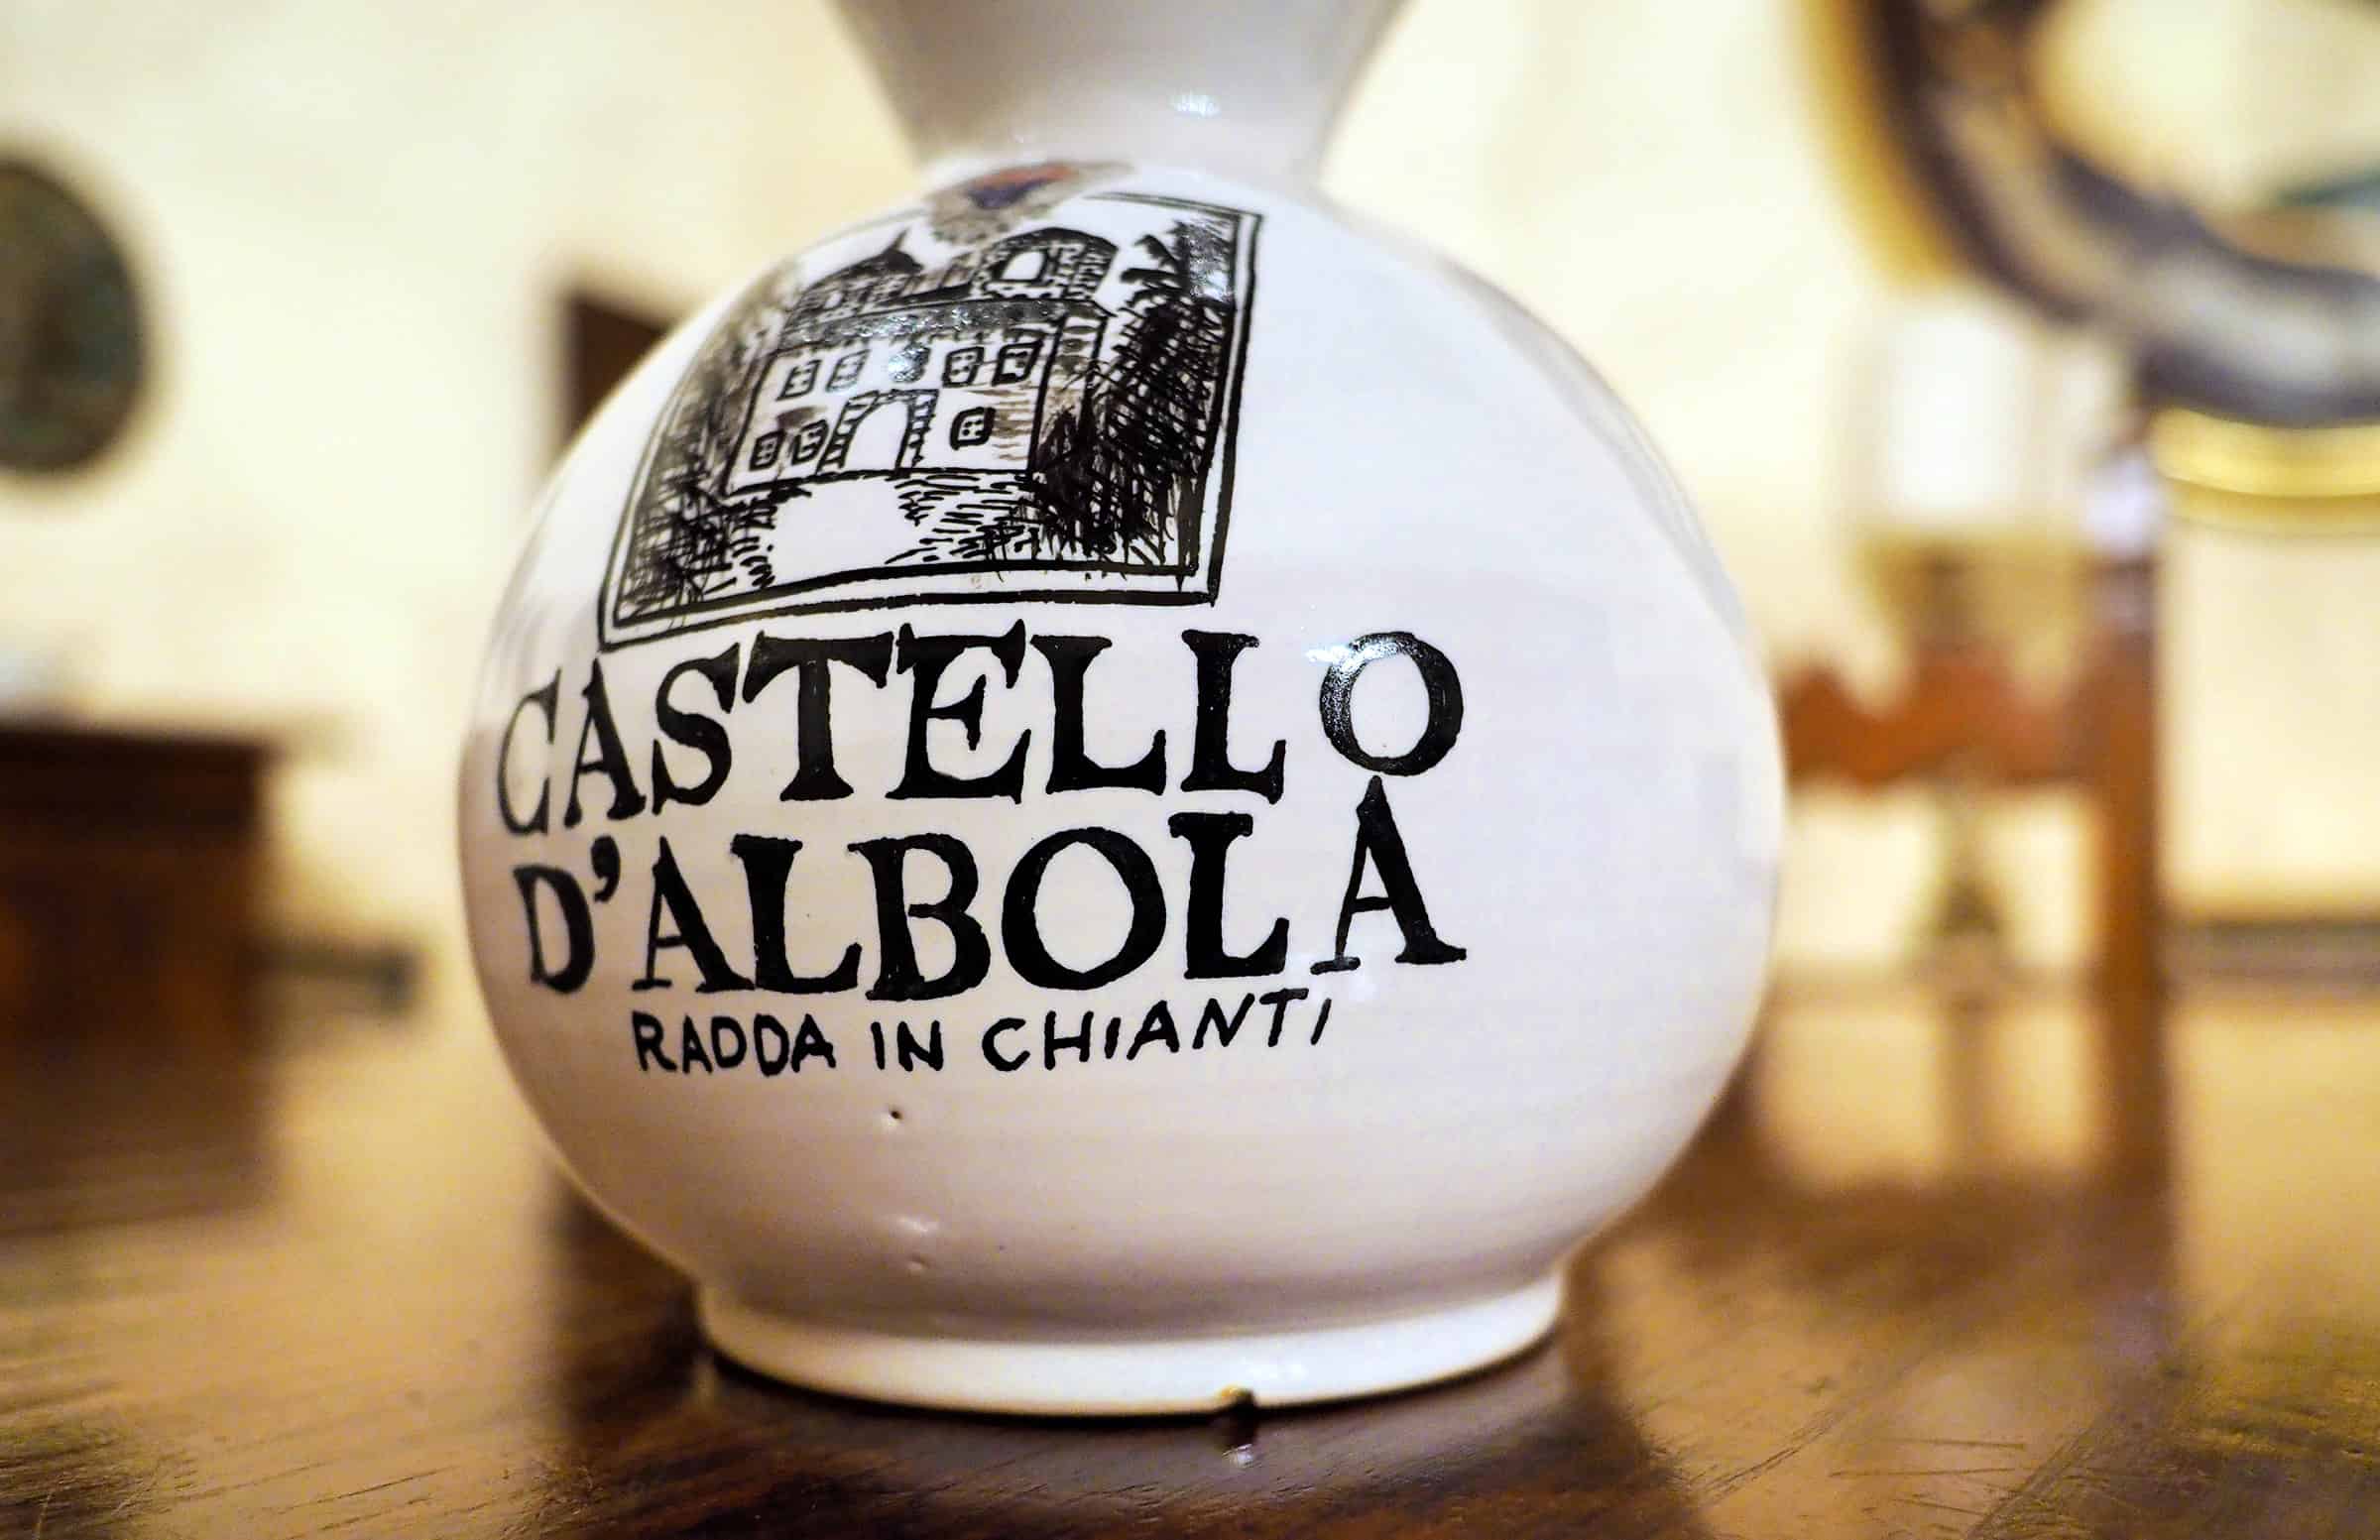 Heerlijk gegeten bij Castello d'Albola